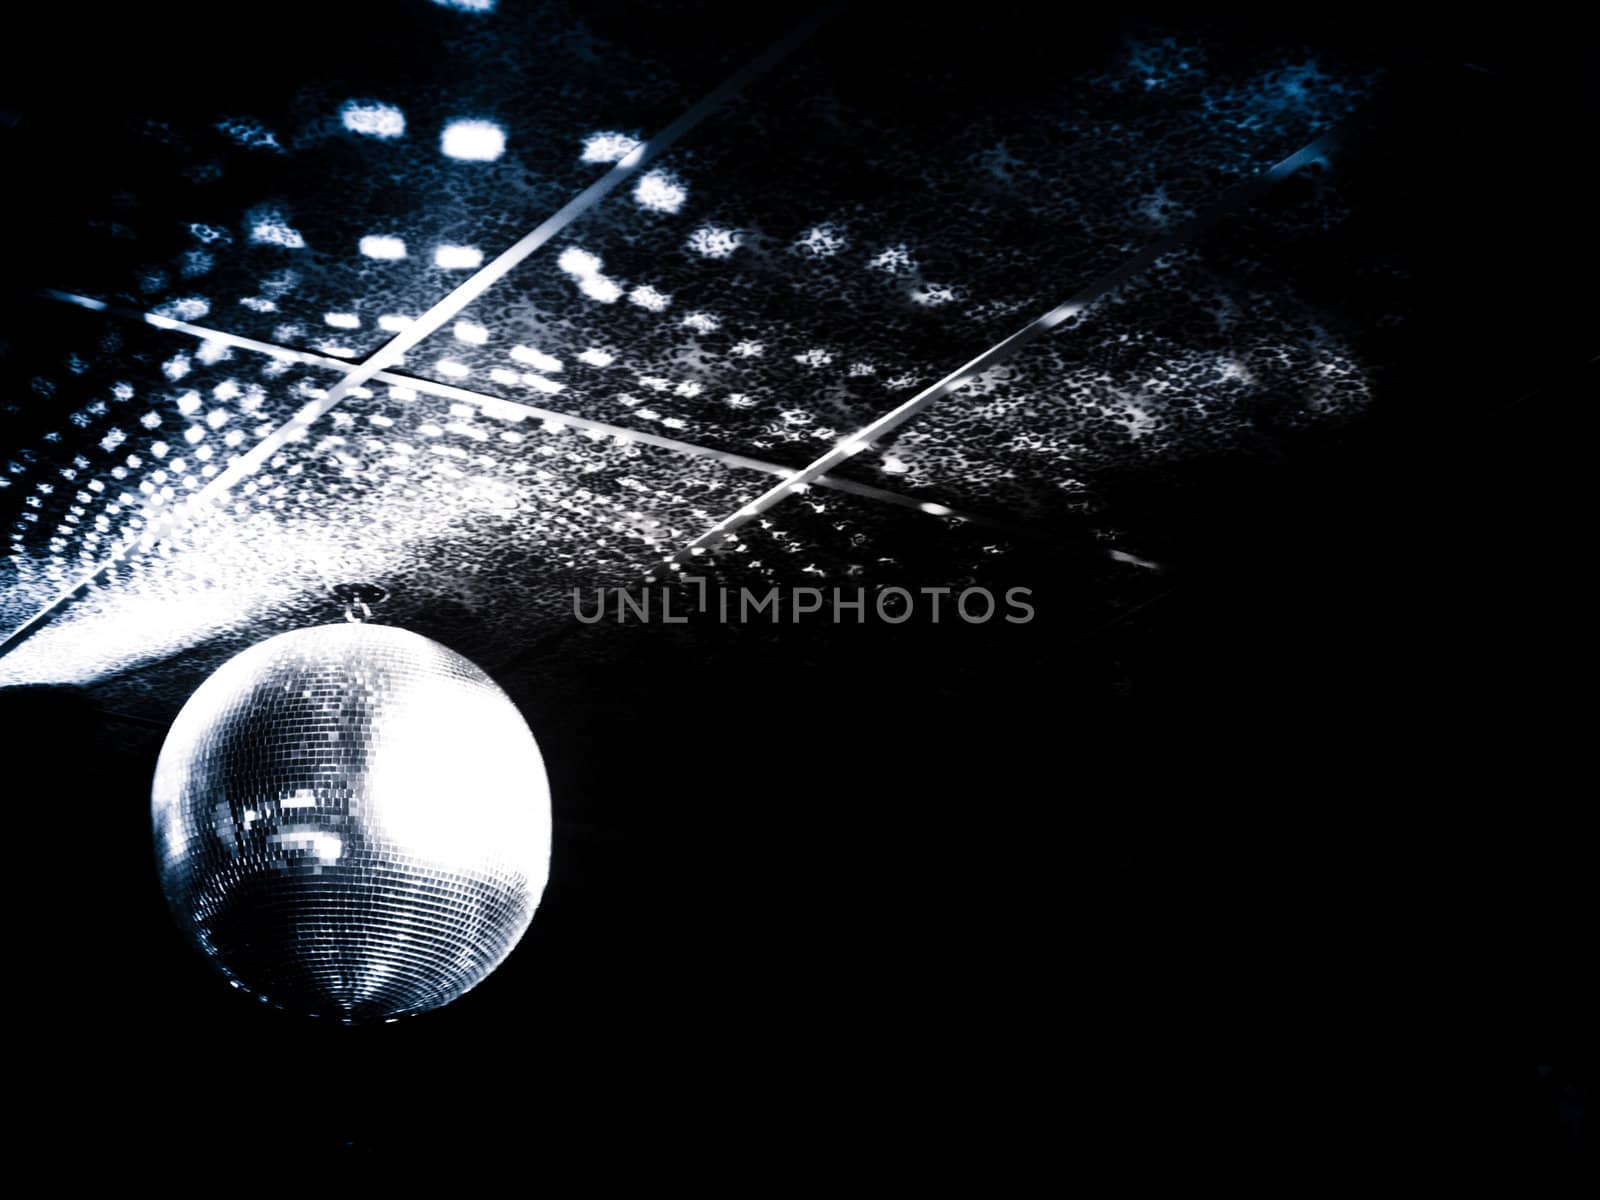 Mirror ball in a night club by Alex_L